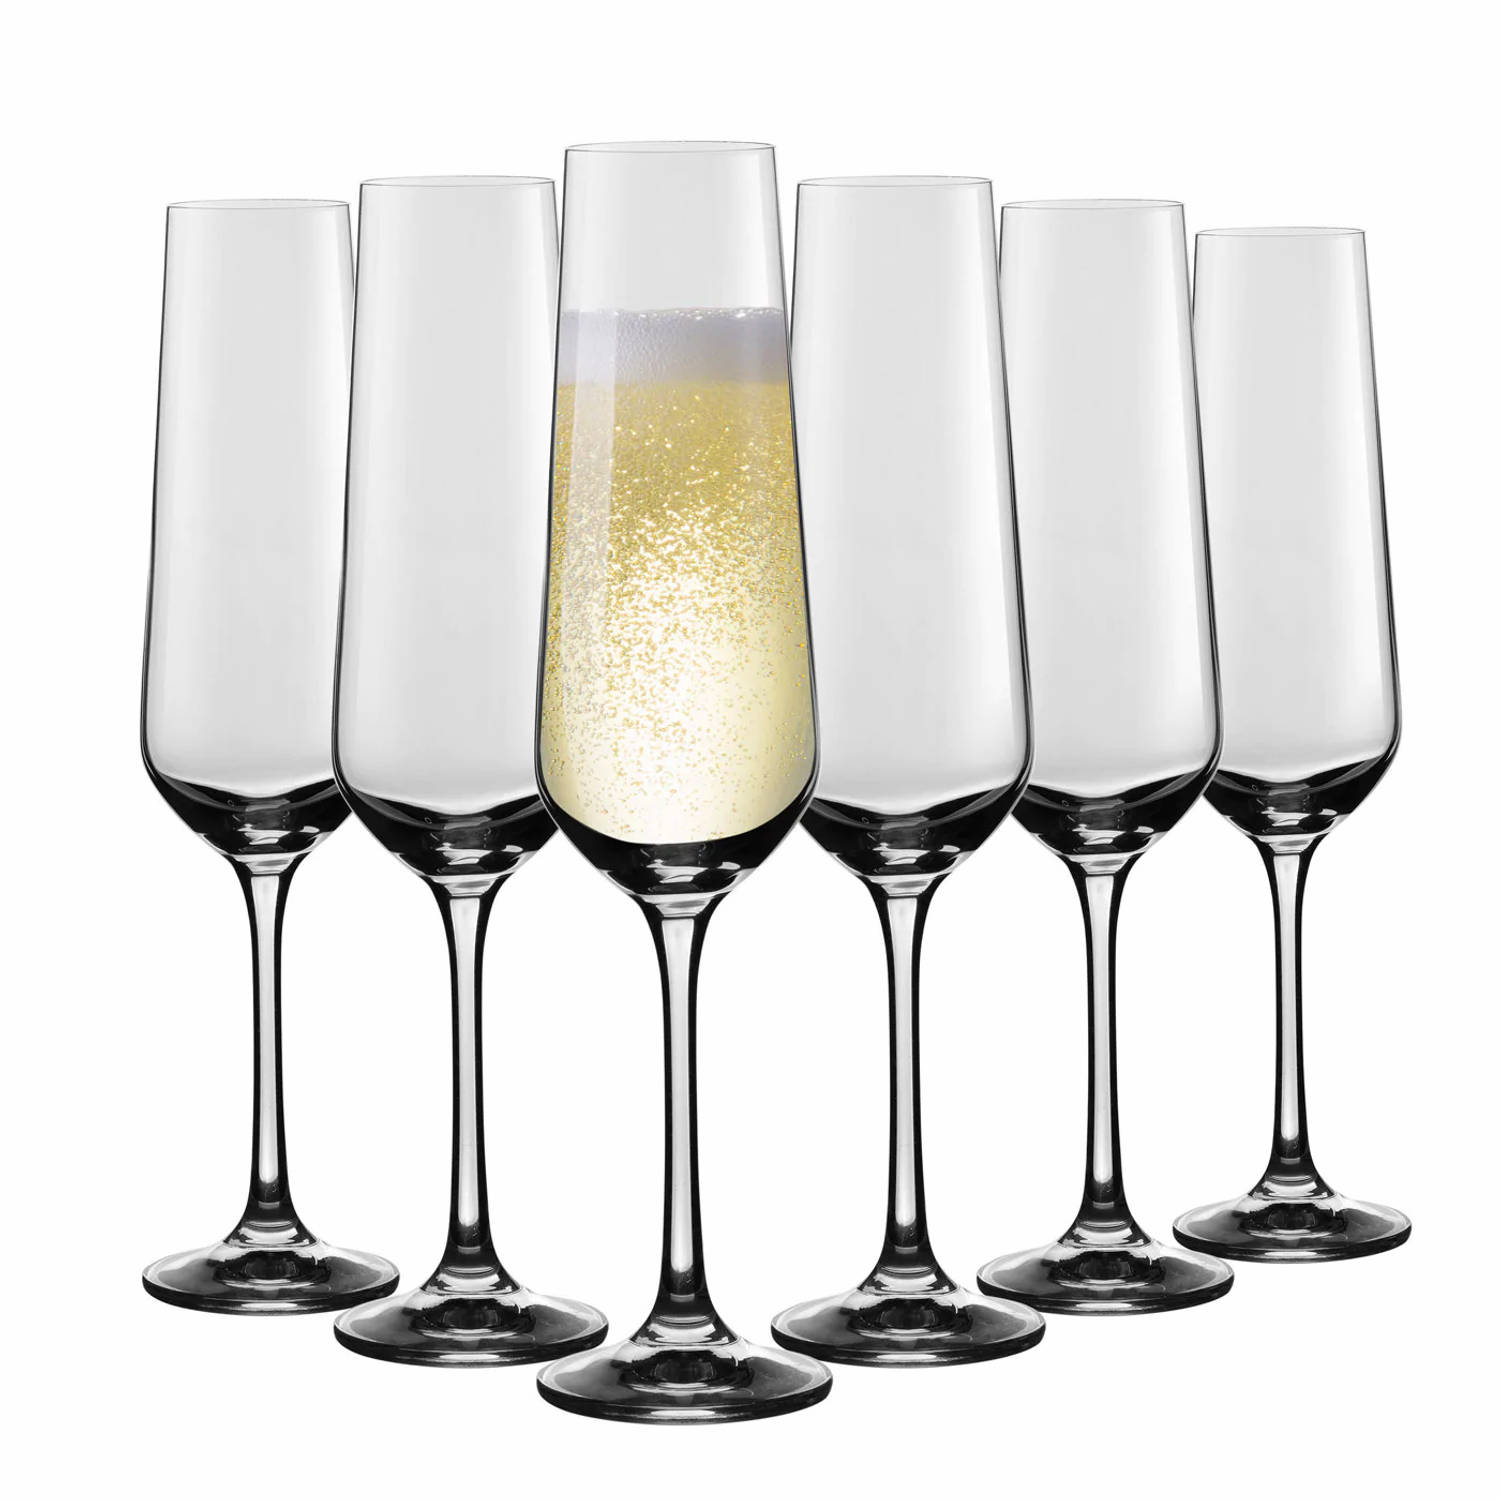 Florina Australia set van 6 exclusieve champagne glazen 260 ml - Zeer luxe en elegante uitstraling - Bevat geen schadelijke stoffen